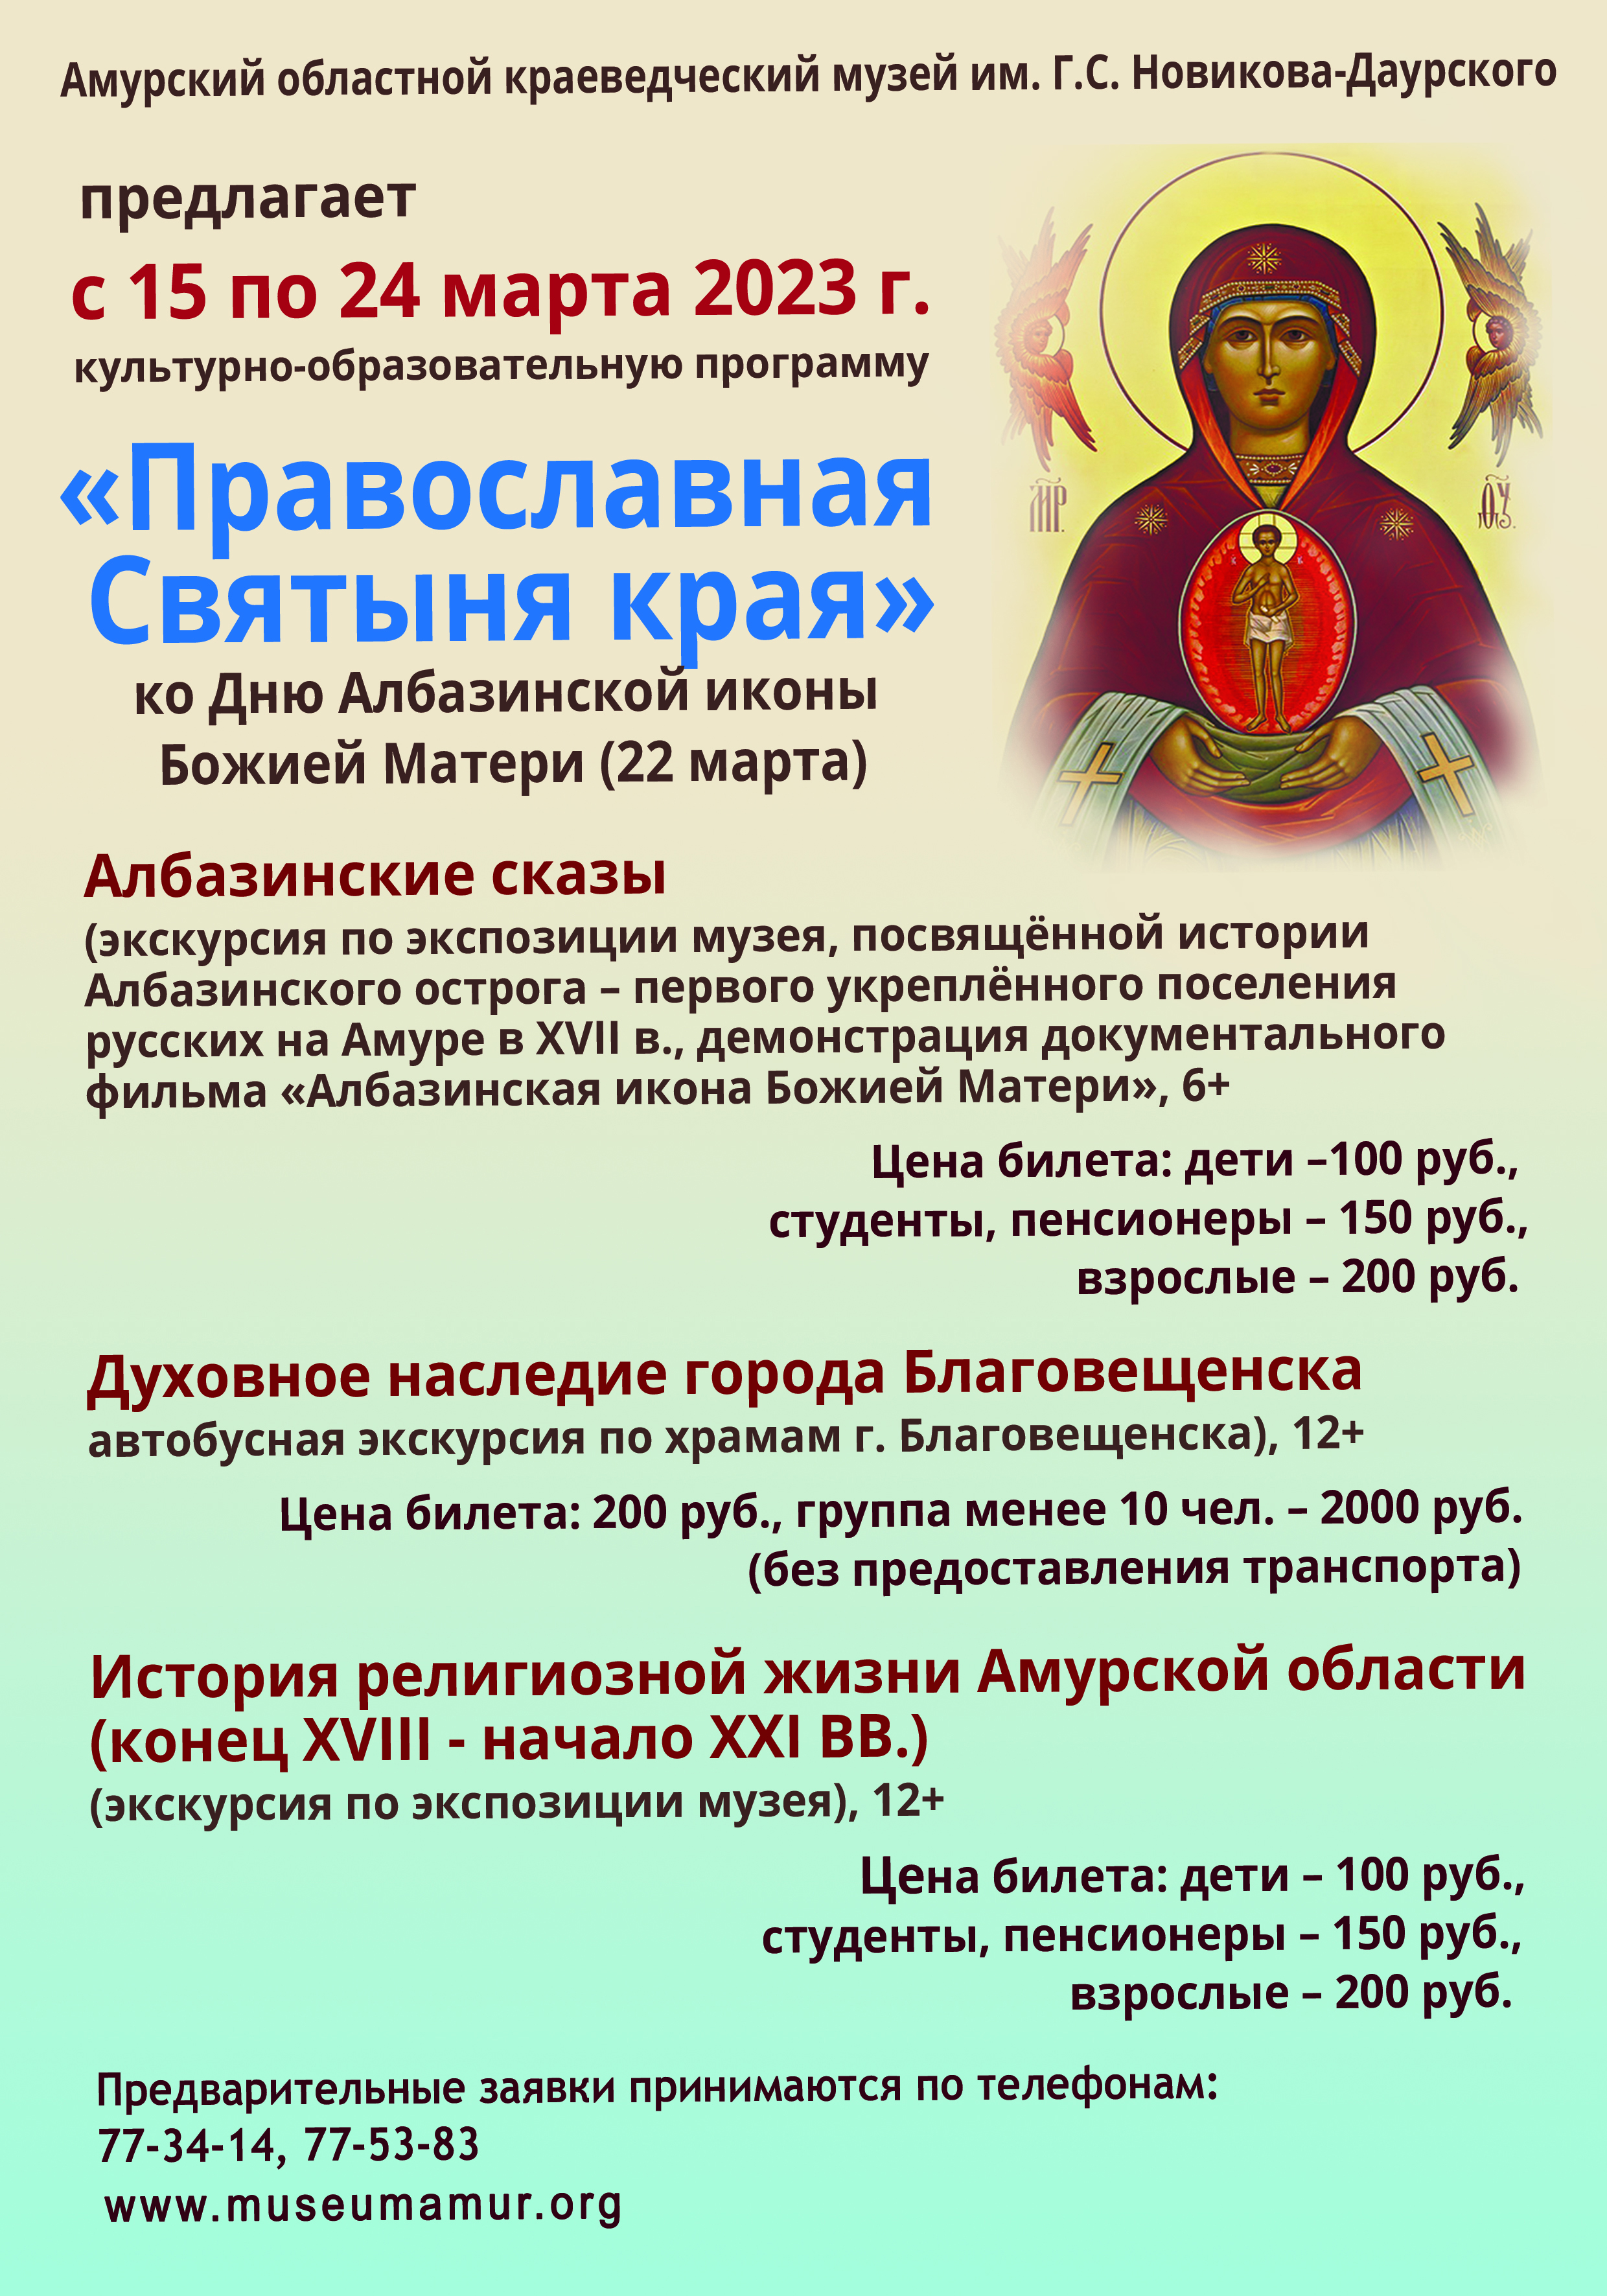 Областной краеведческий музей приглашает амурчан на мероприятия, приуроченные ко Дню Албазинской иконы Божией Матери